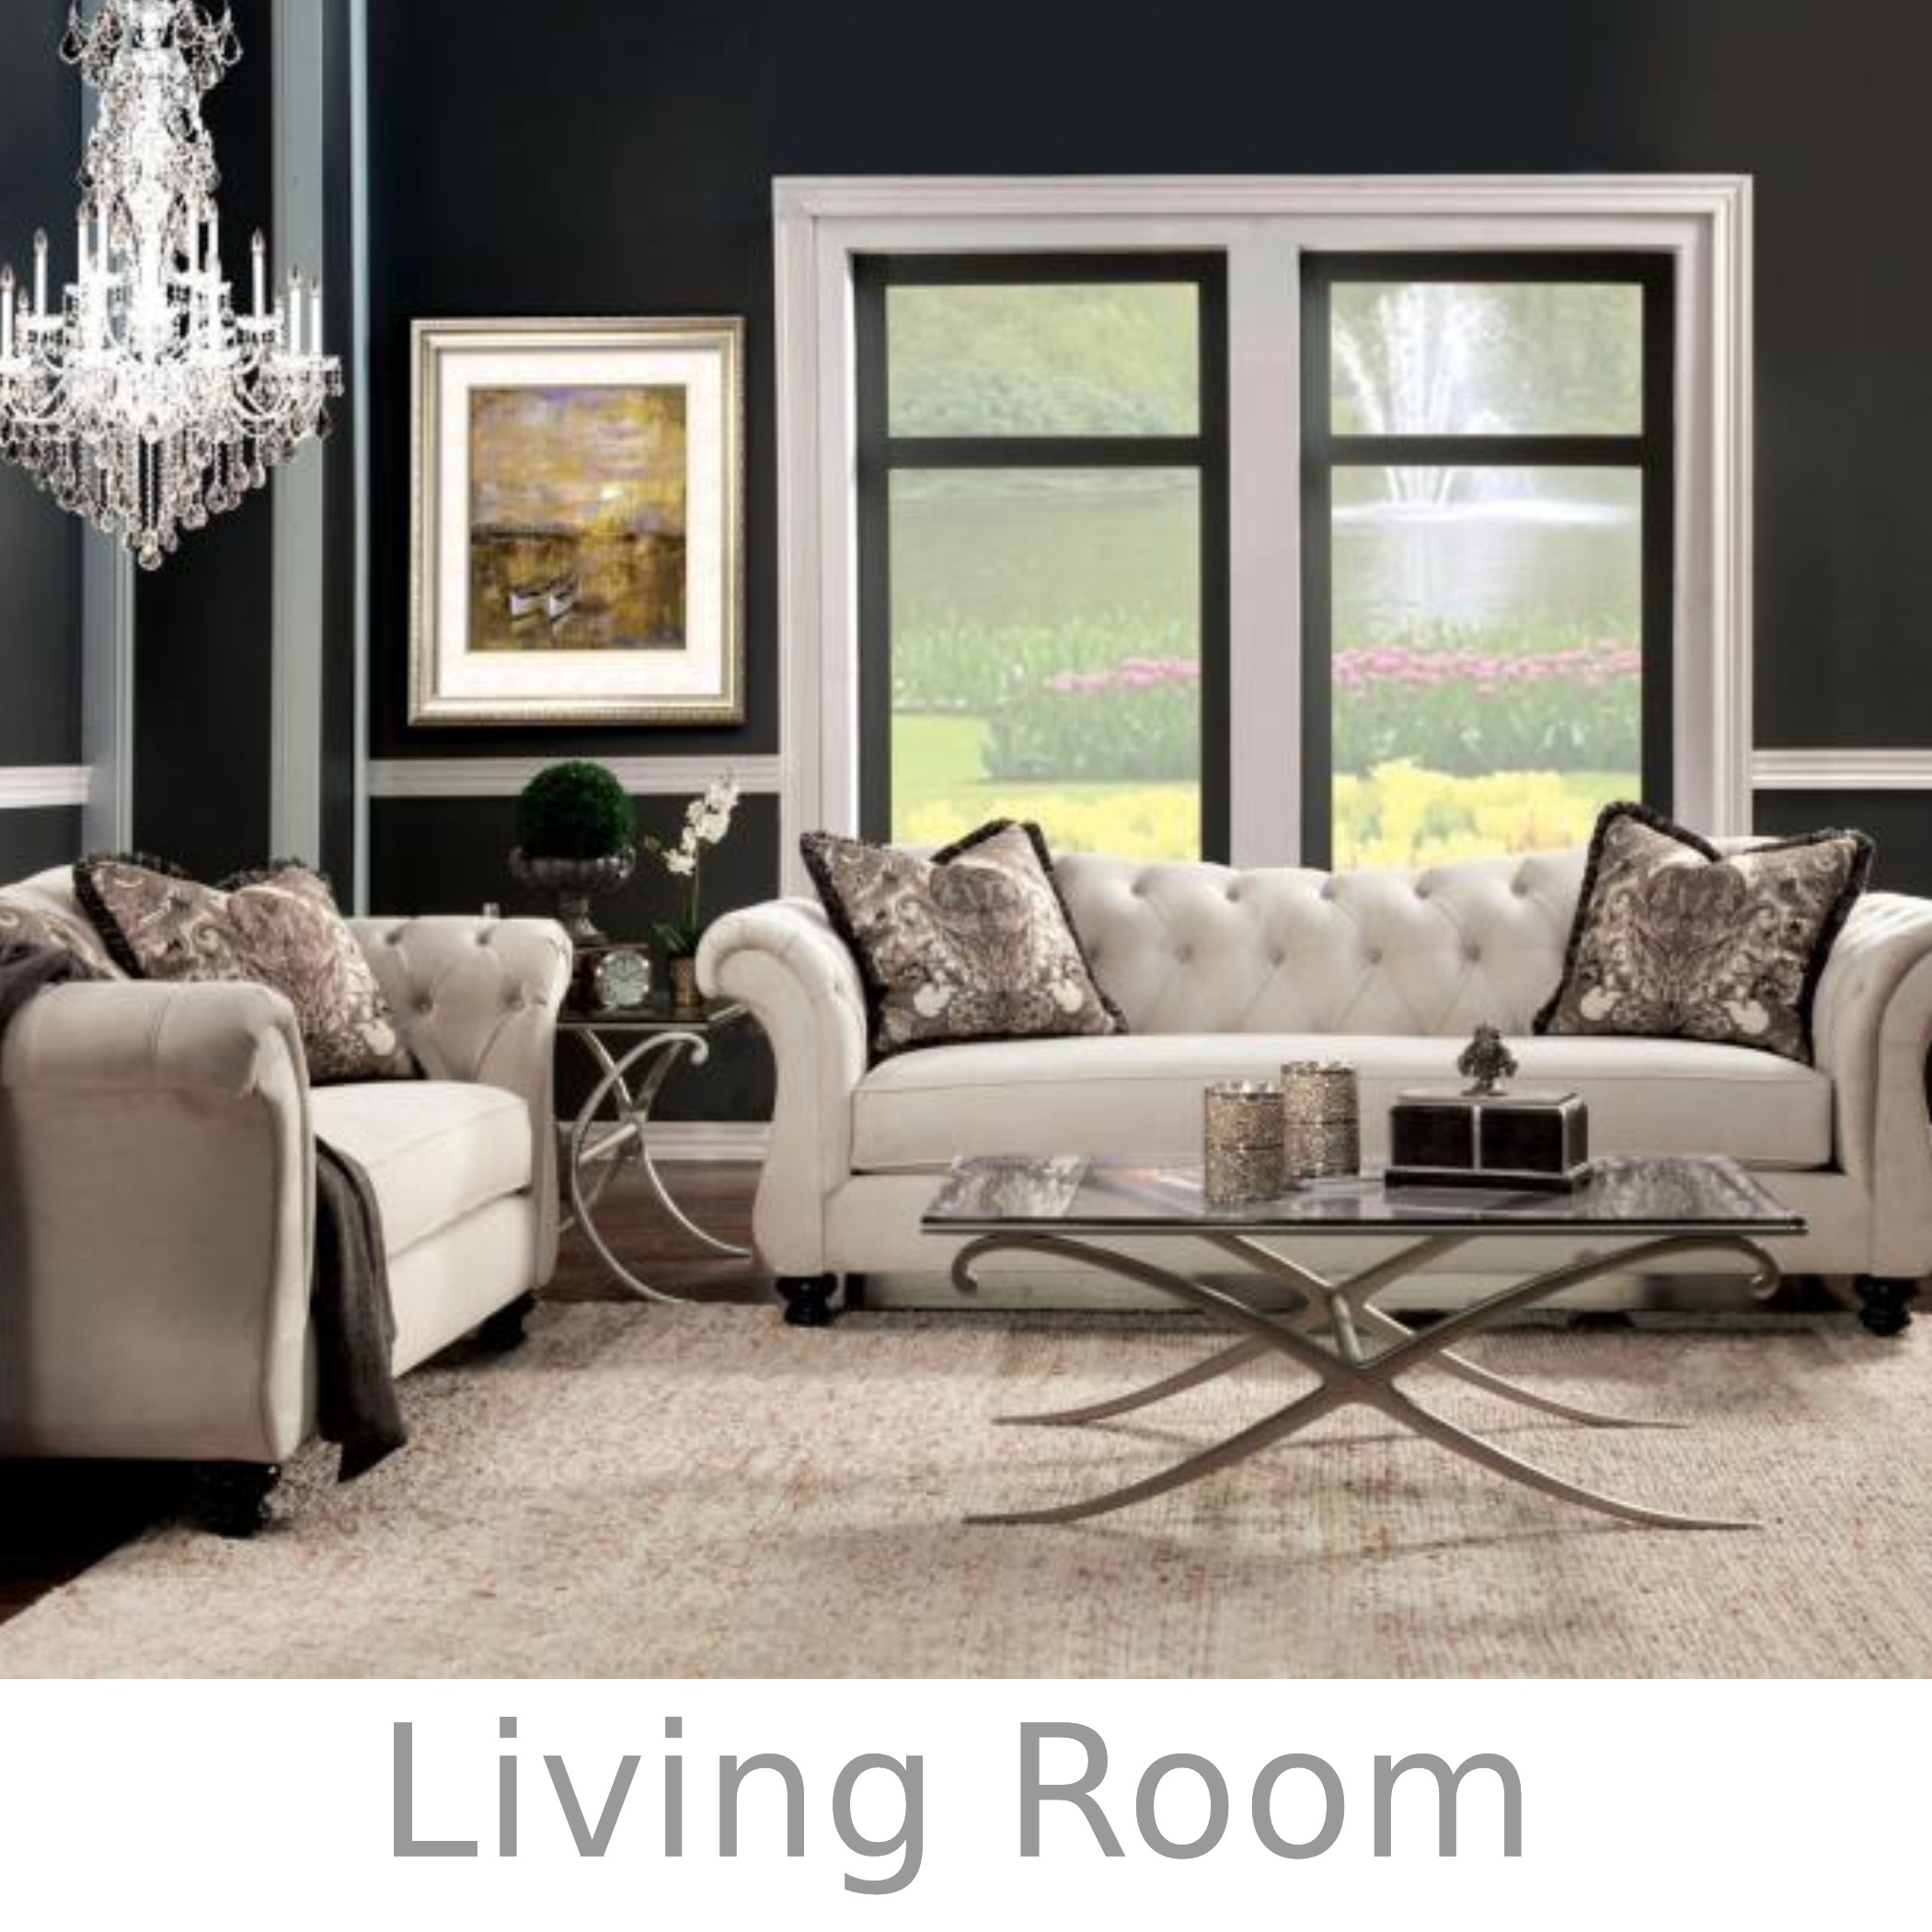 Living Room3.jpg